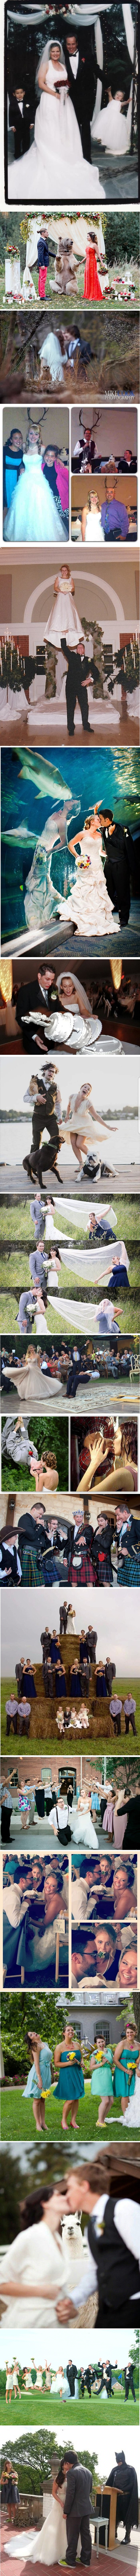 Smiješne fotografije vjenčanja prikazuju drugu stranu tog posebnog dana